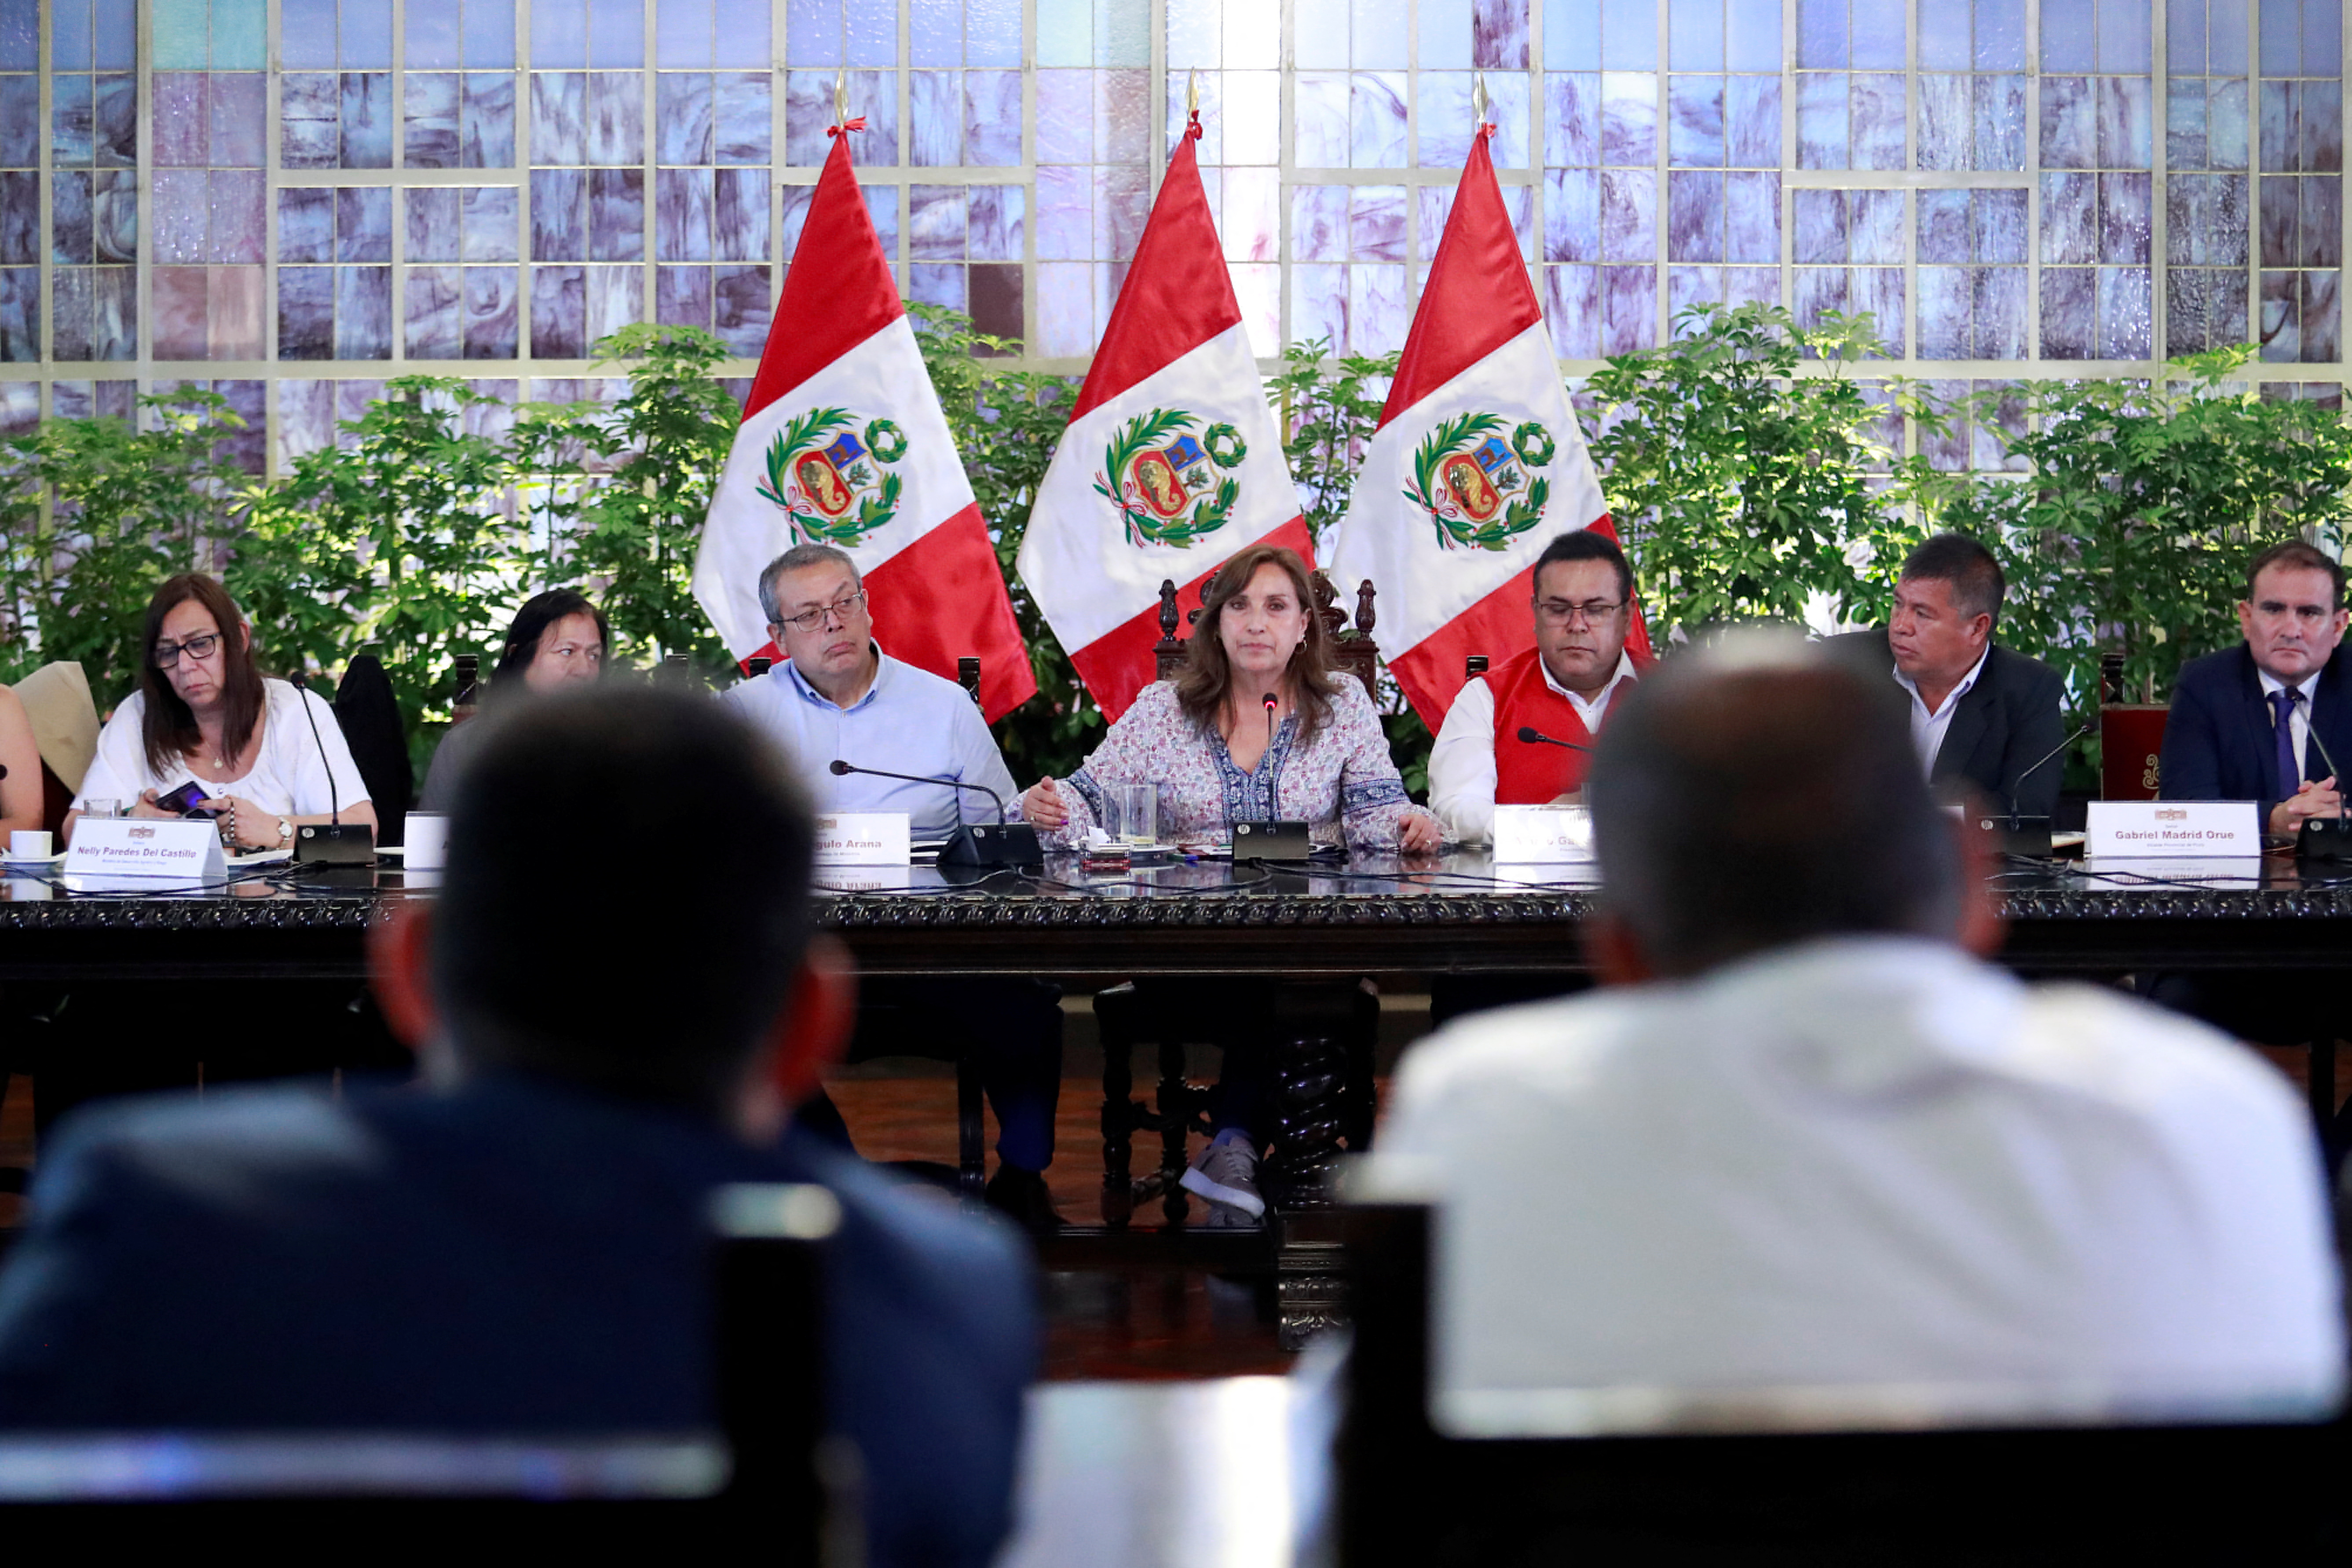 Președintele peruan Dina Boluarte în timpul unei întâlniri cu primarii și guvernatorii la Lima